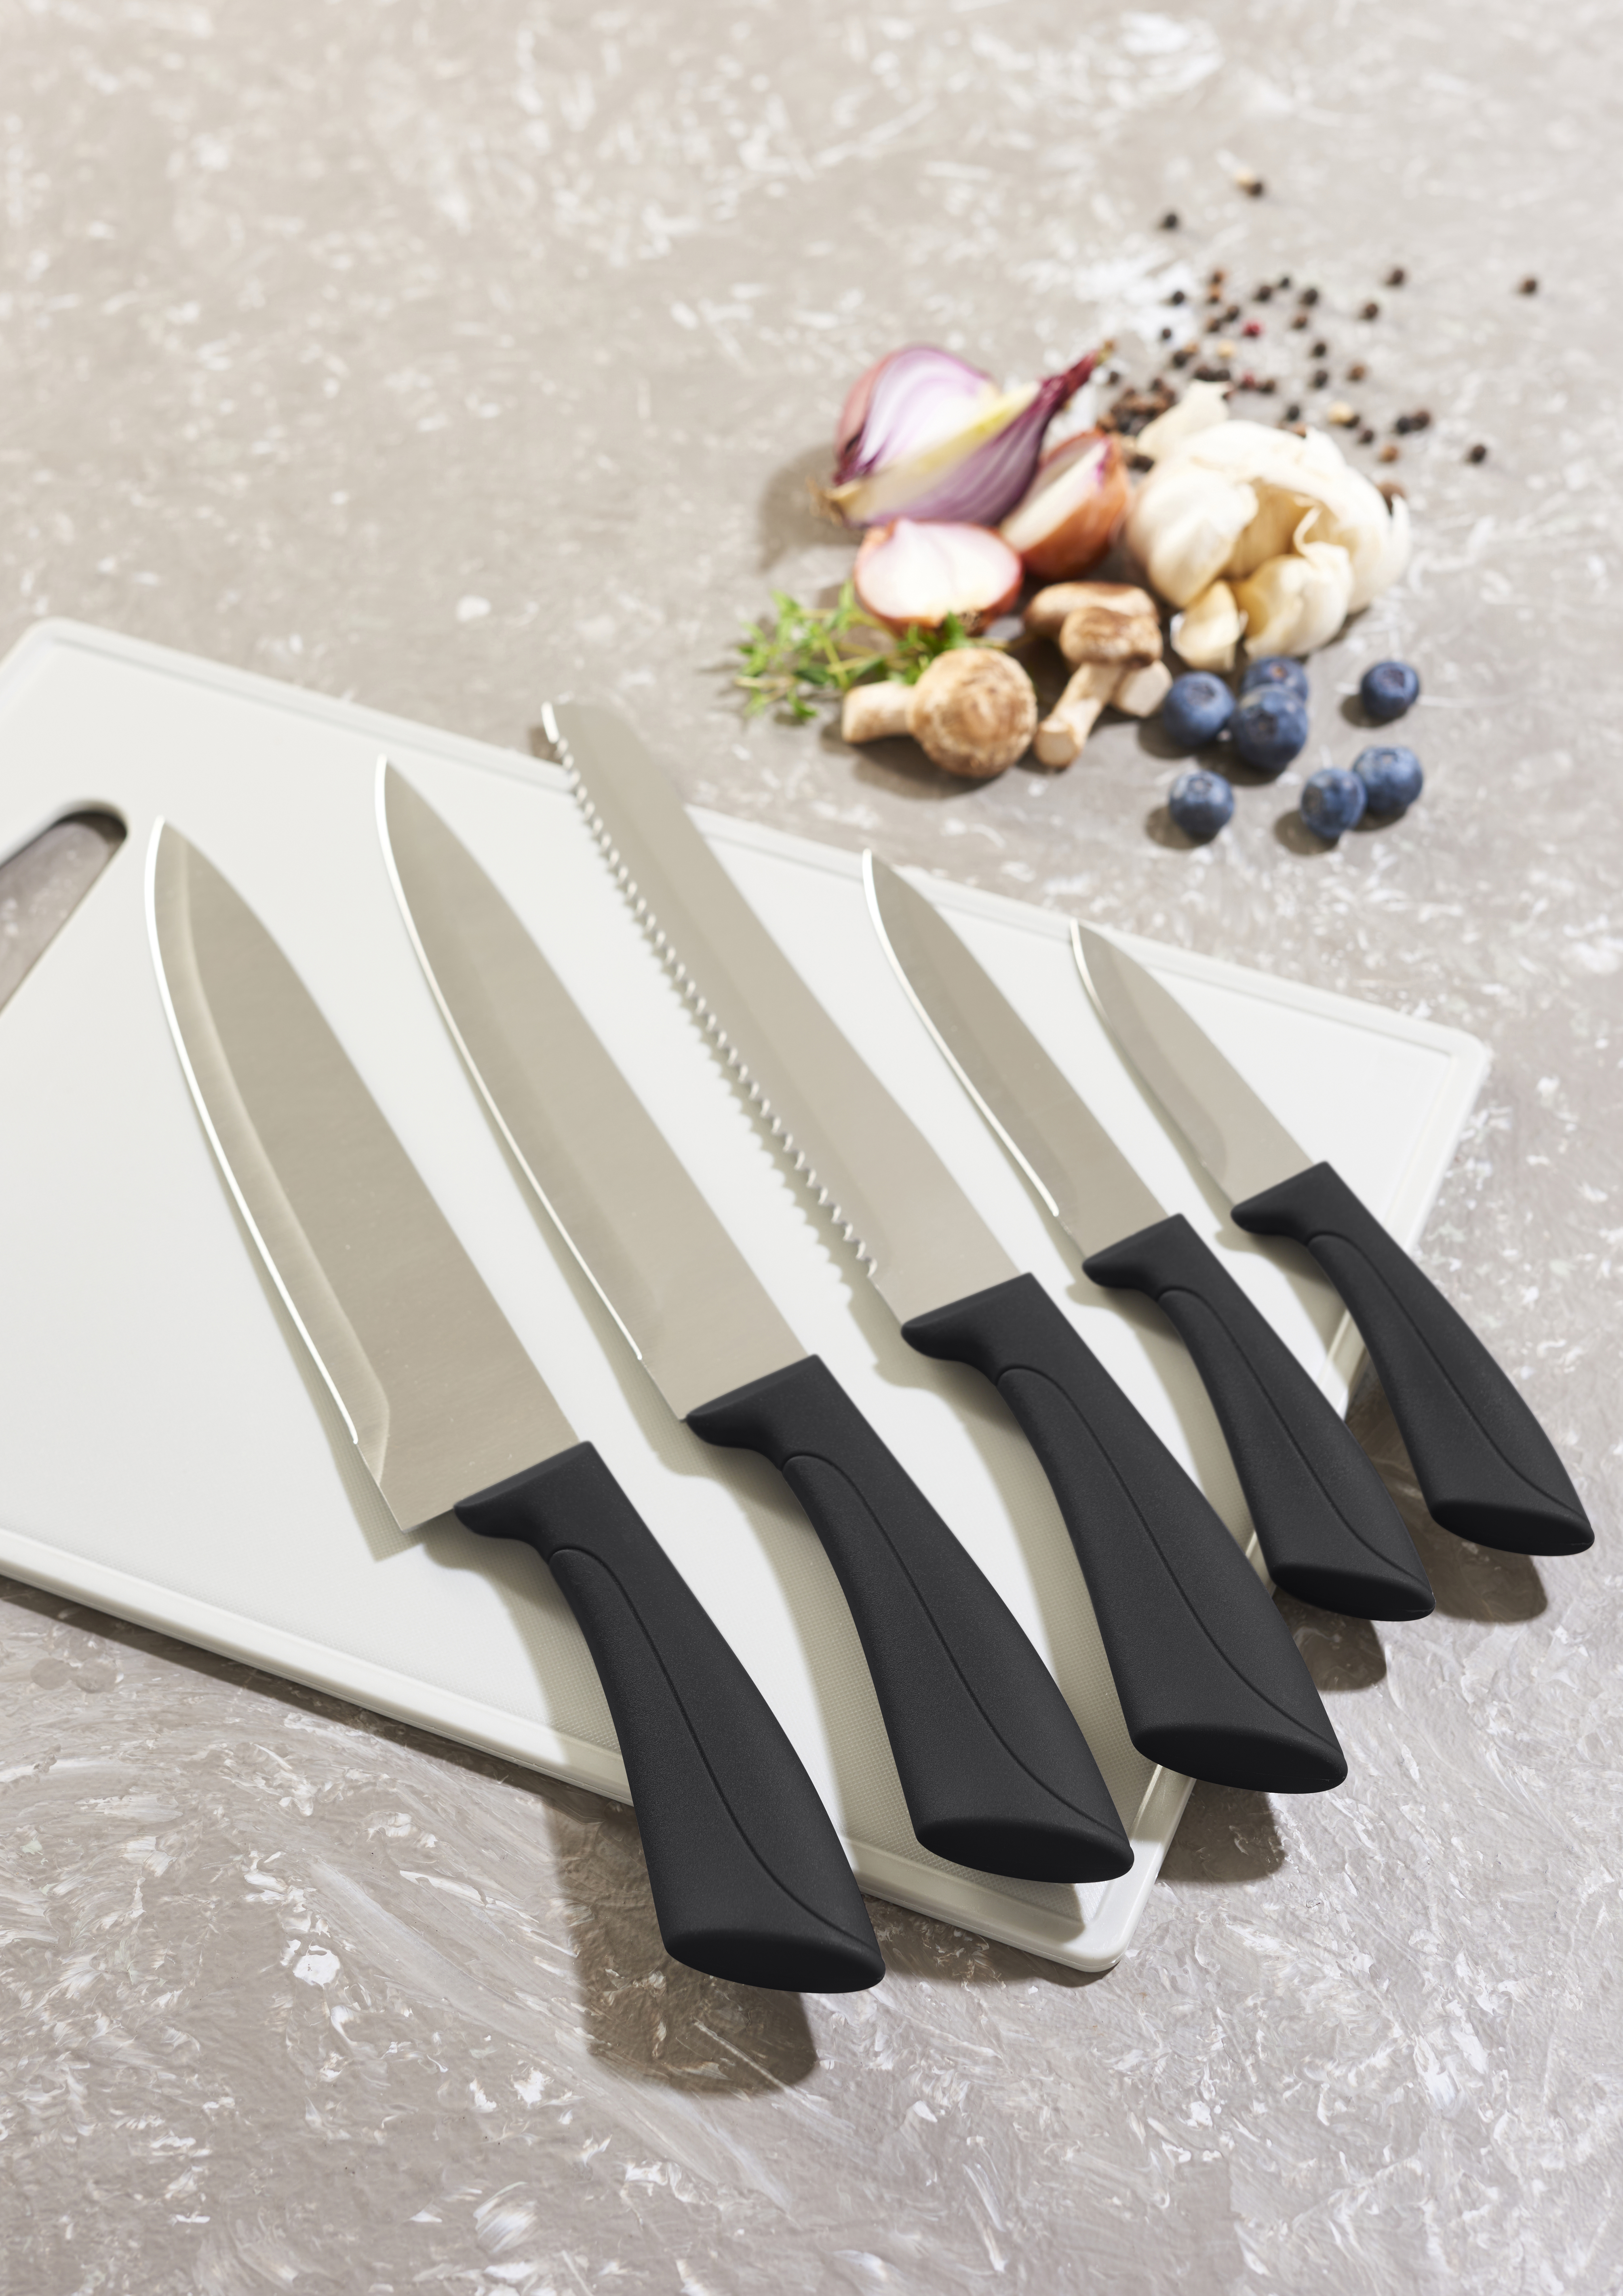 Lot de 6 couteaux de cuisine «Swiss Classic» VICTORINOX